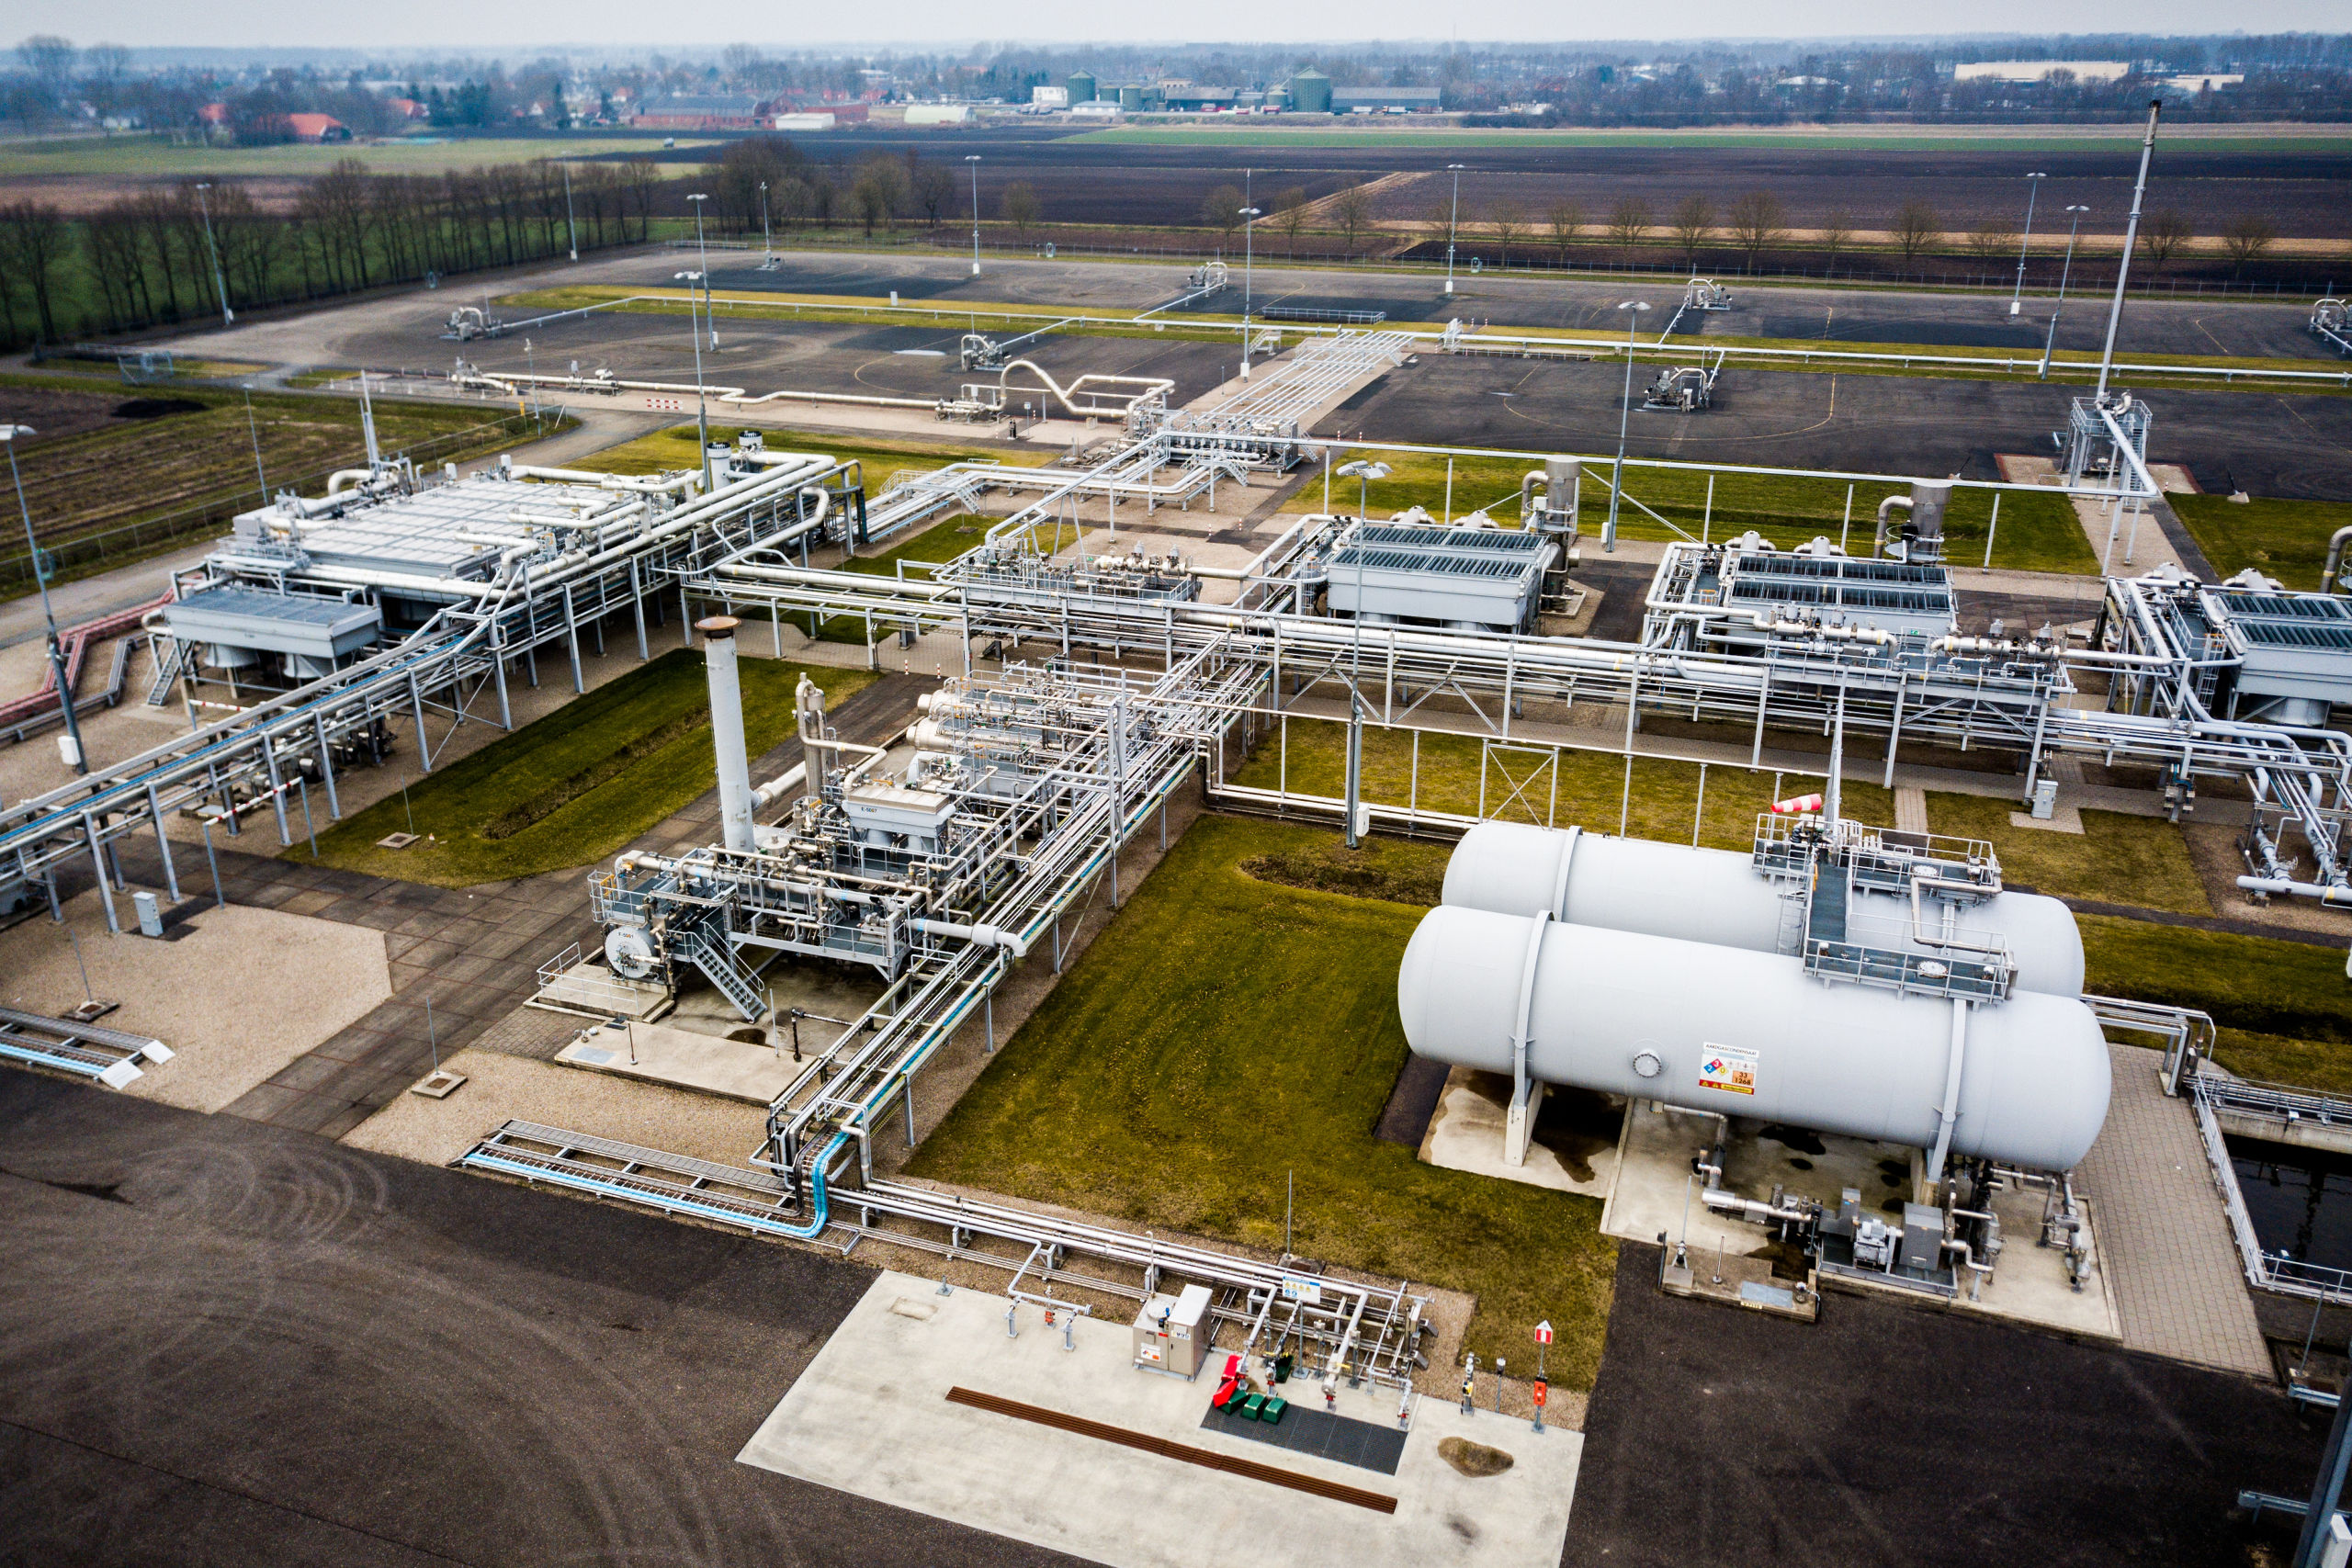 Gaswinningslocatie van de NAM in Muntendam. Het kabinet heeft besloten om binnen 12 jaar een einde te maken aan de gaswinning in de provincie Groningen. 